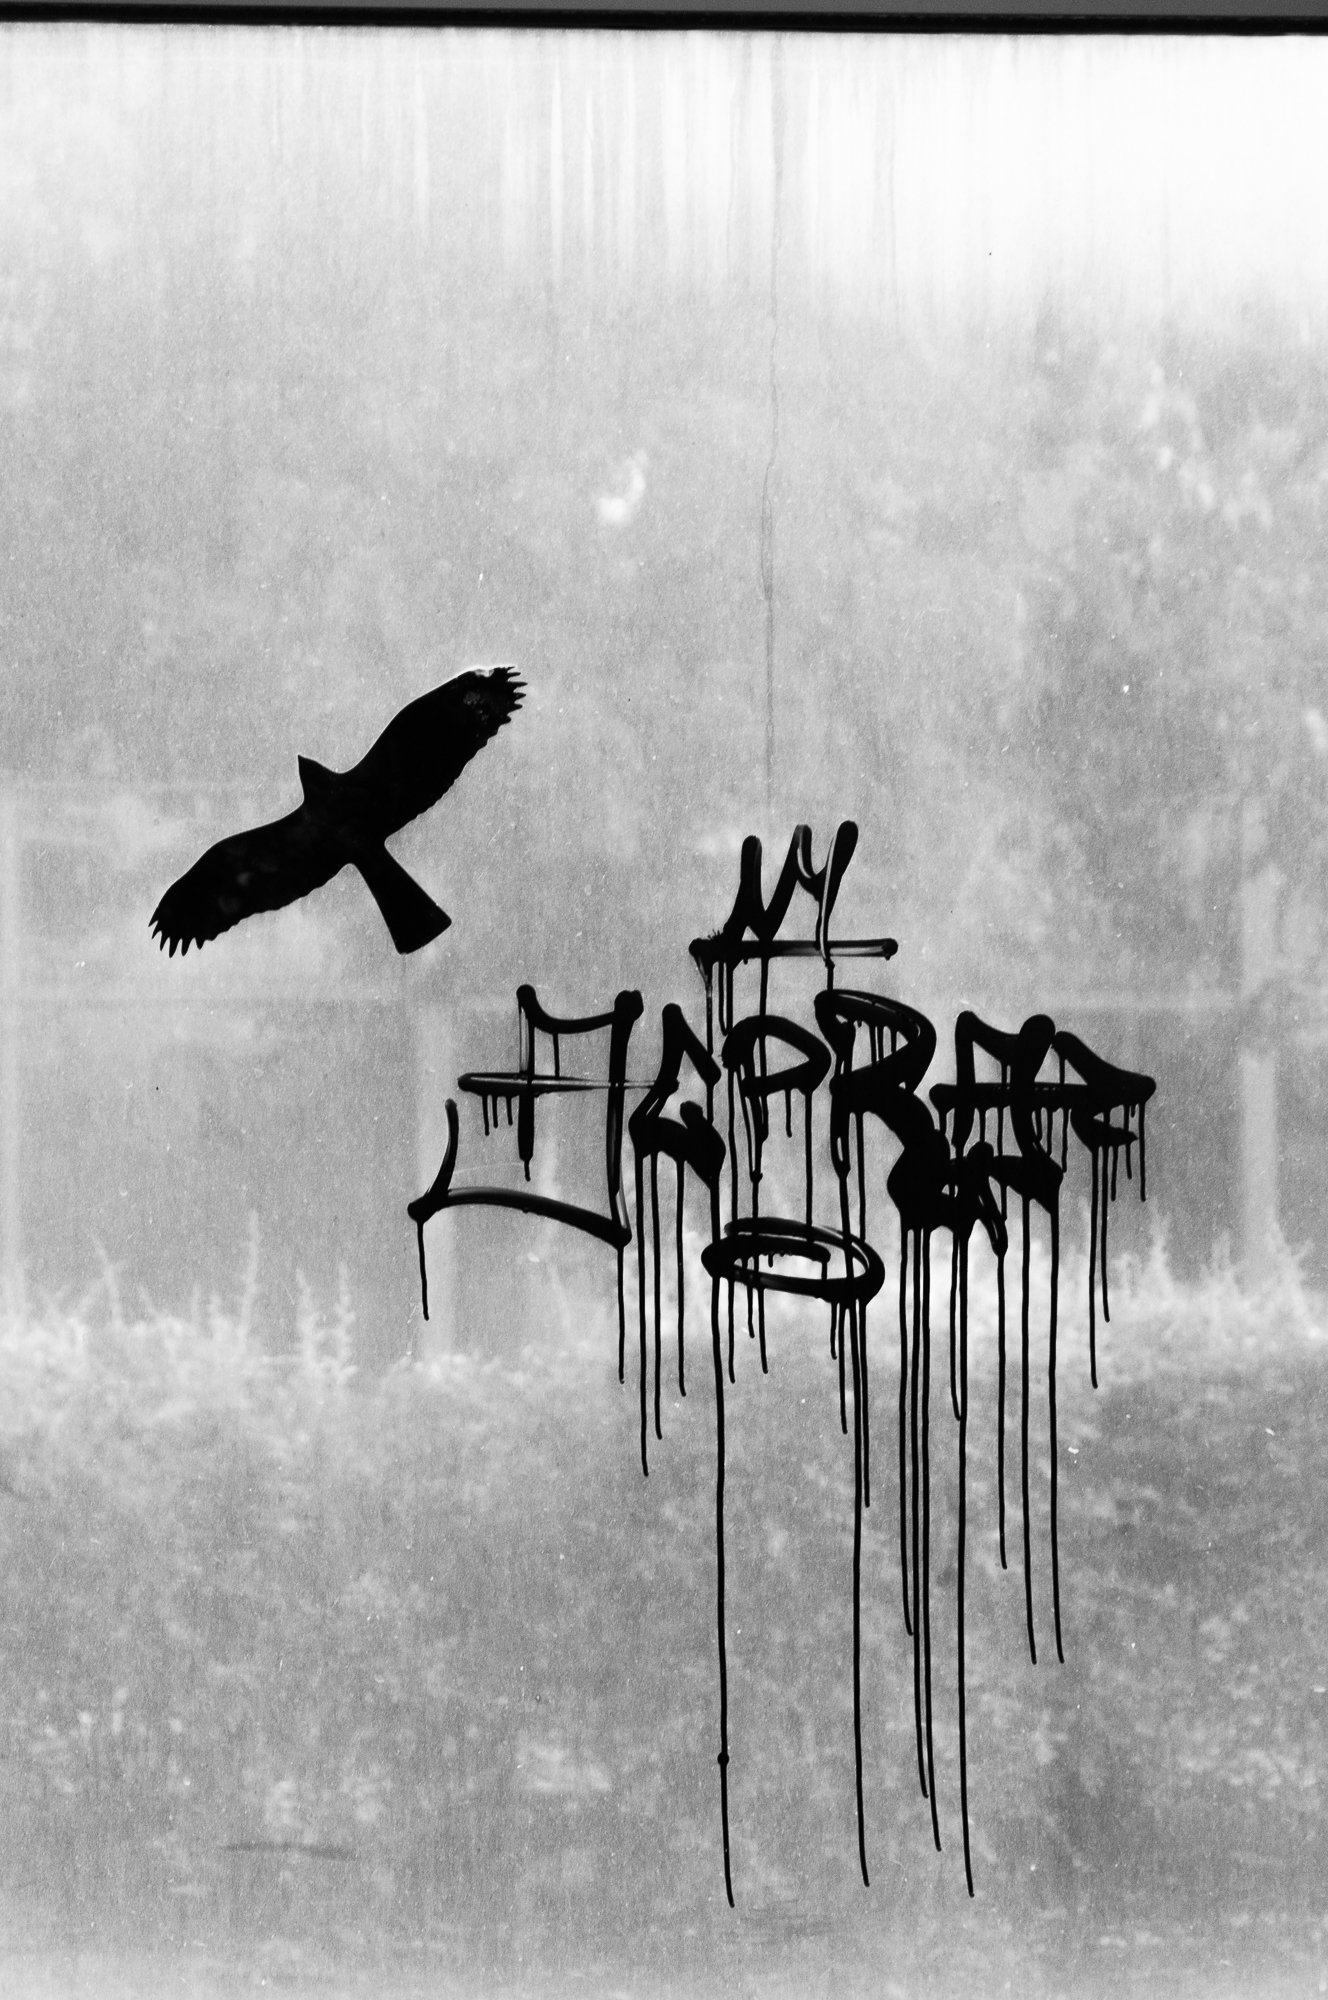 Adam Mazek Photography Warsaw 2018. Bird and graffiti. Minimalism.